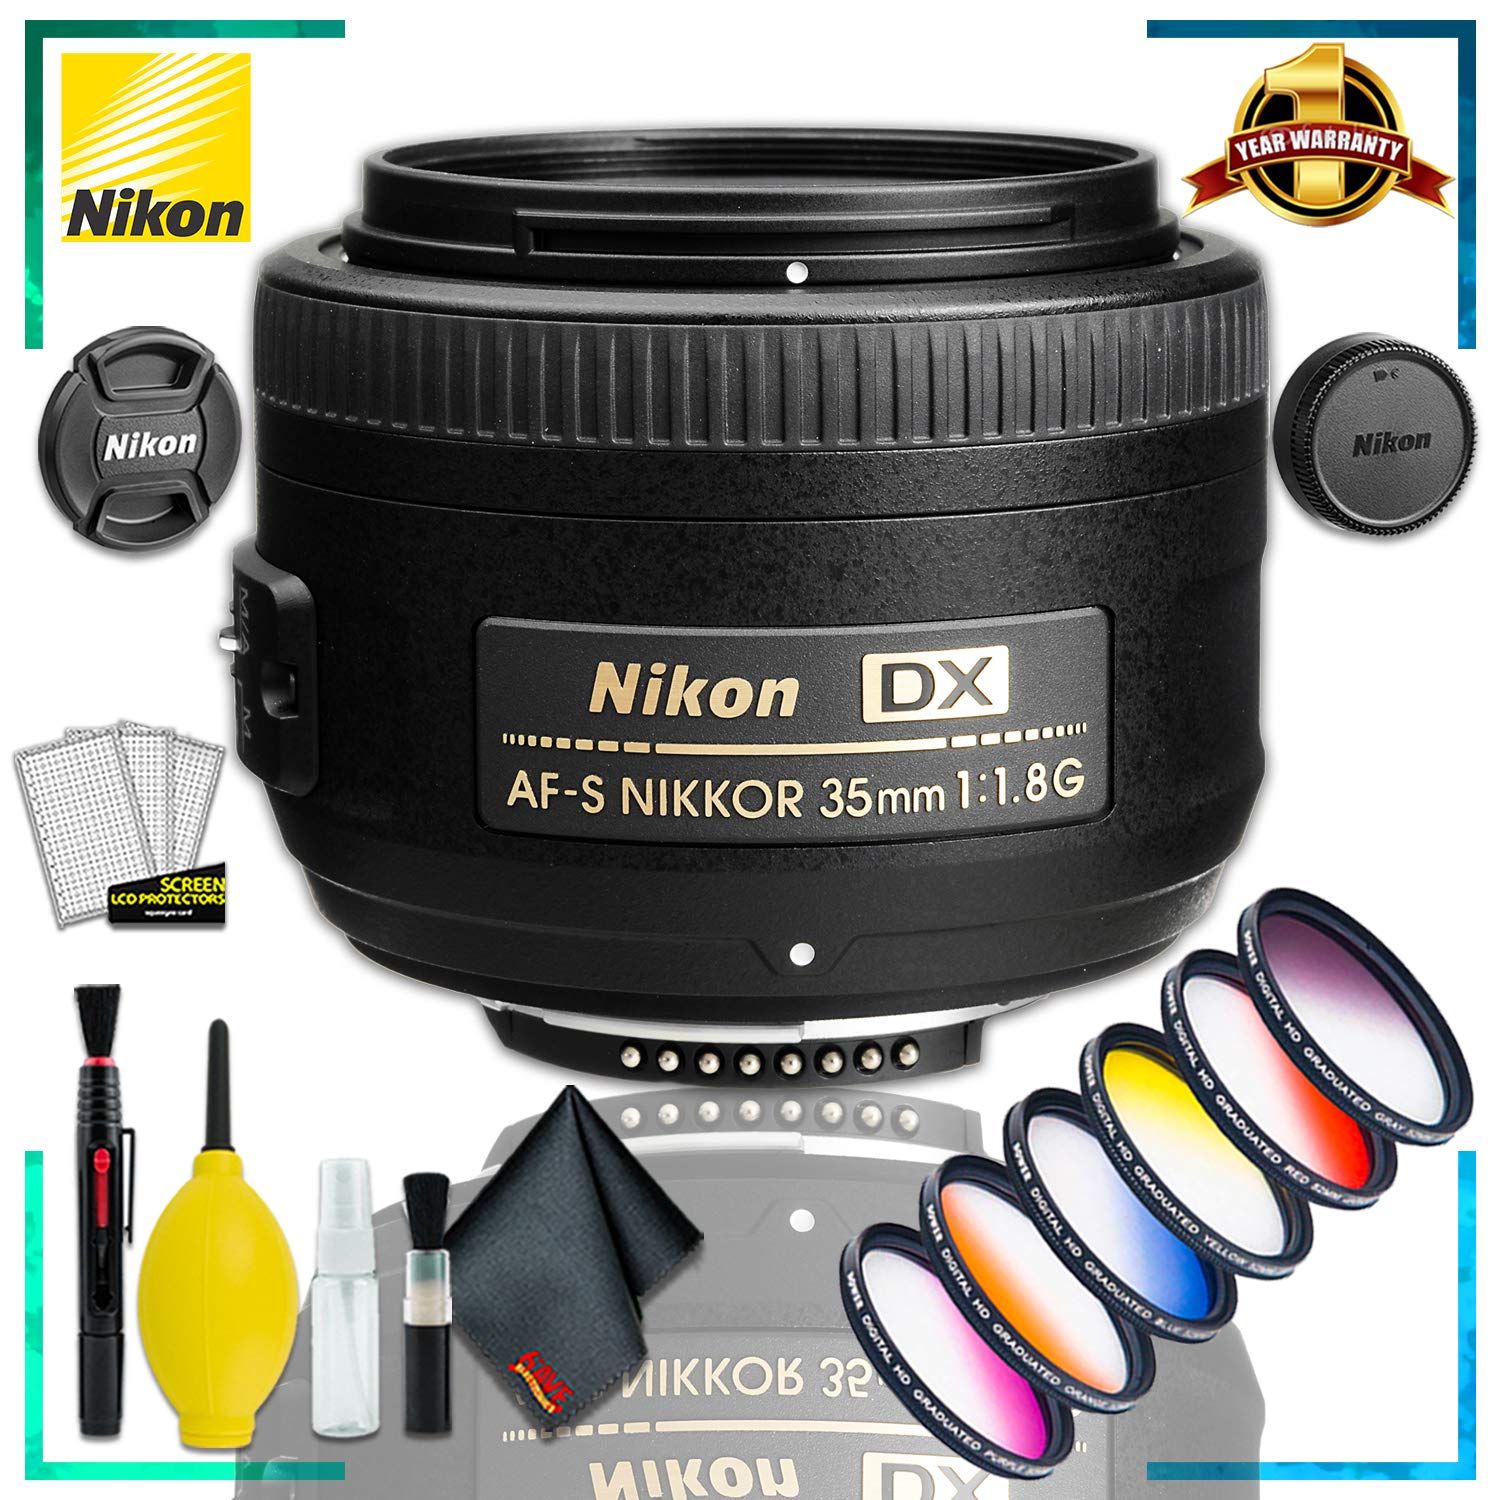 Nikon AF-S DX NIKKOR 35mm f/1.8G Lens + Vivitar Graduated Color Filter Kit + Cleaning Kit